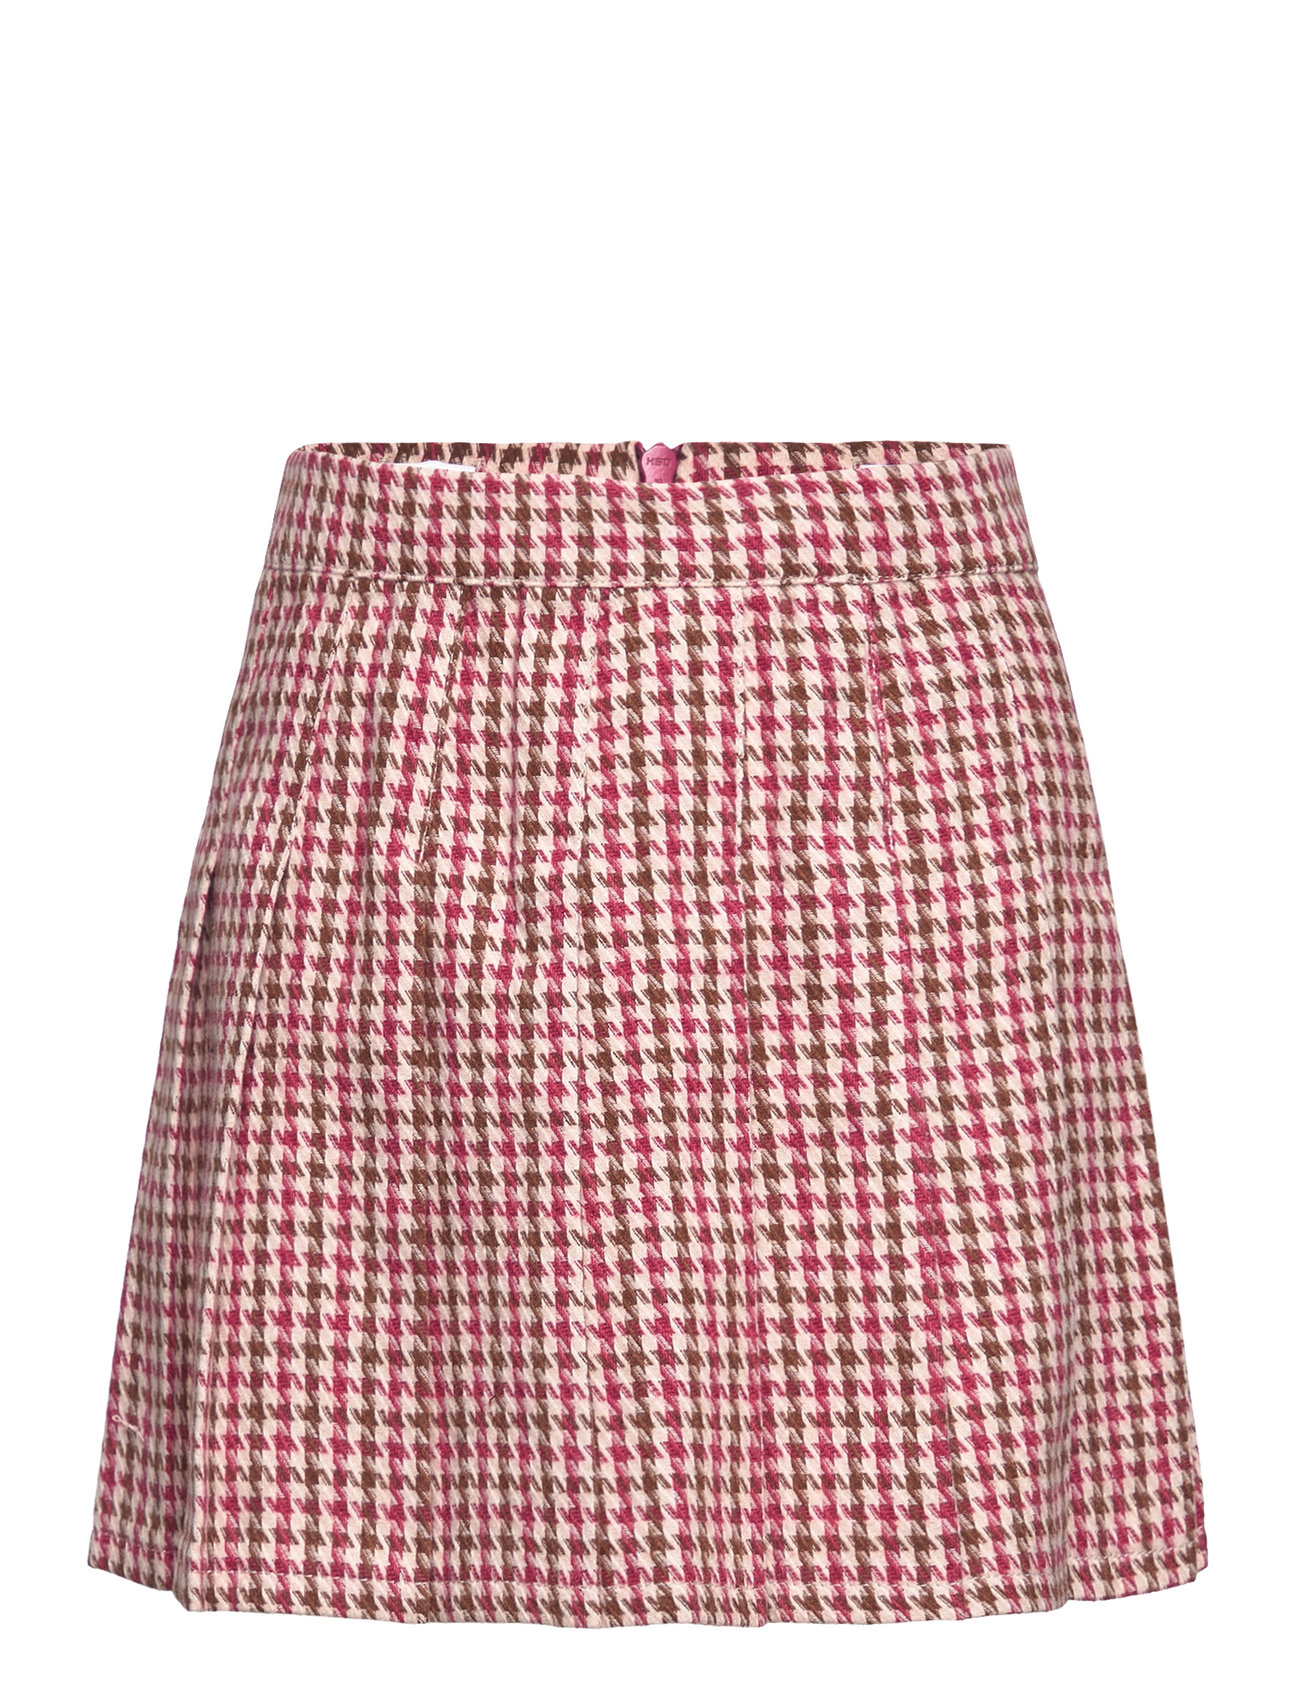 Kogmulle Tennis Check Skirt Wvn Dresses & Skirts Skirts Short Skirts Multi/patterned Kids Only